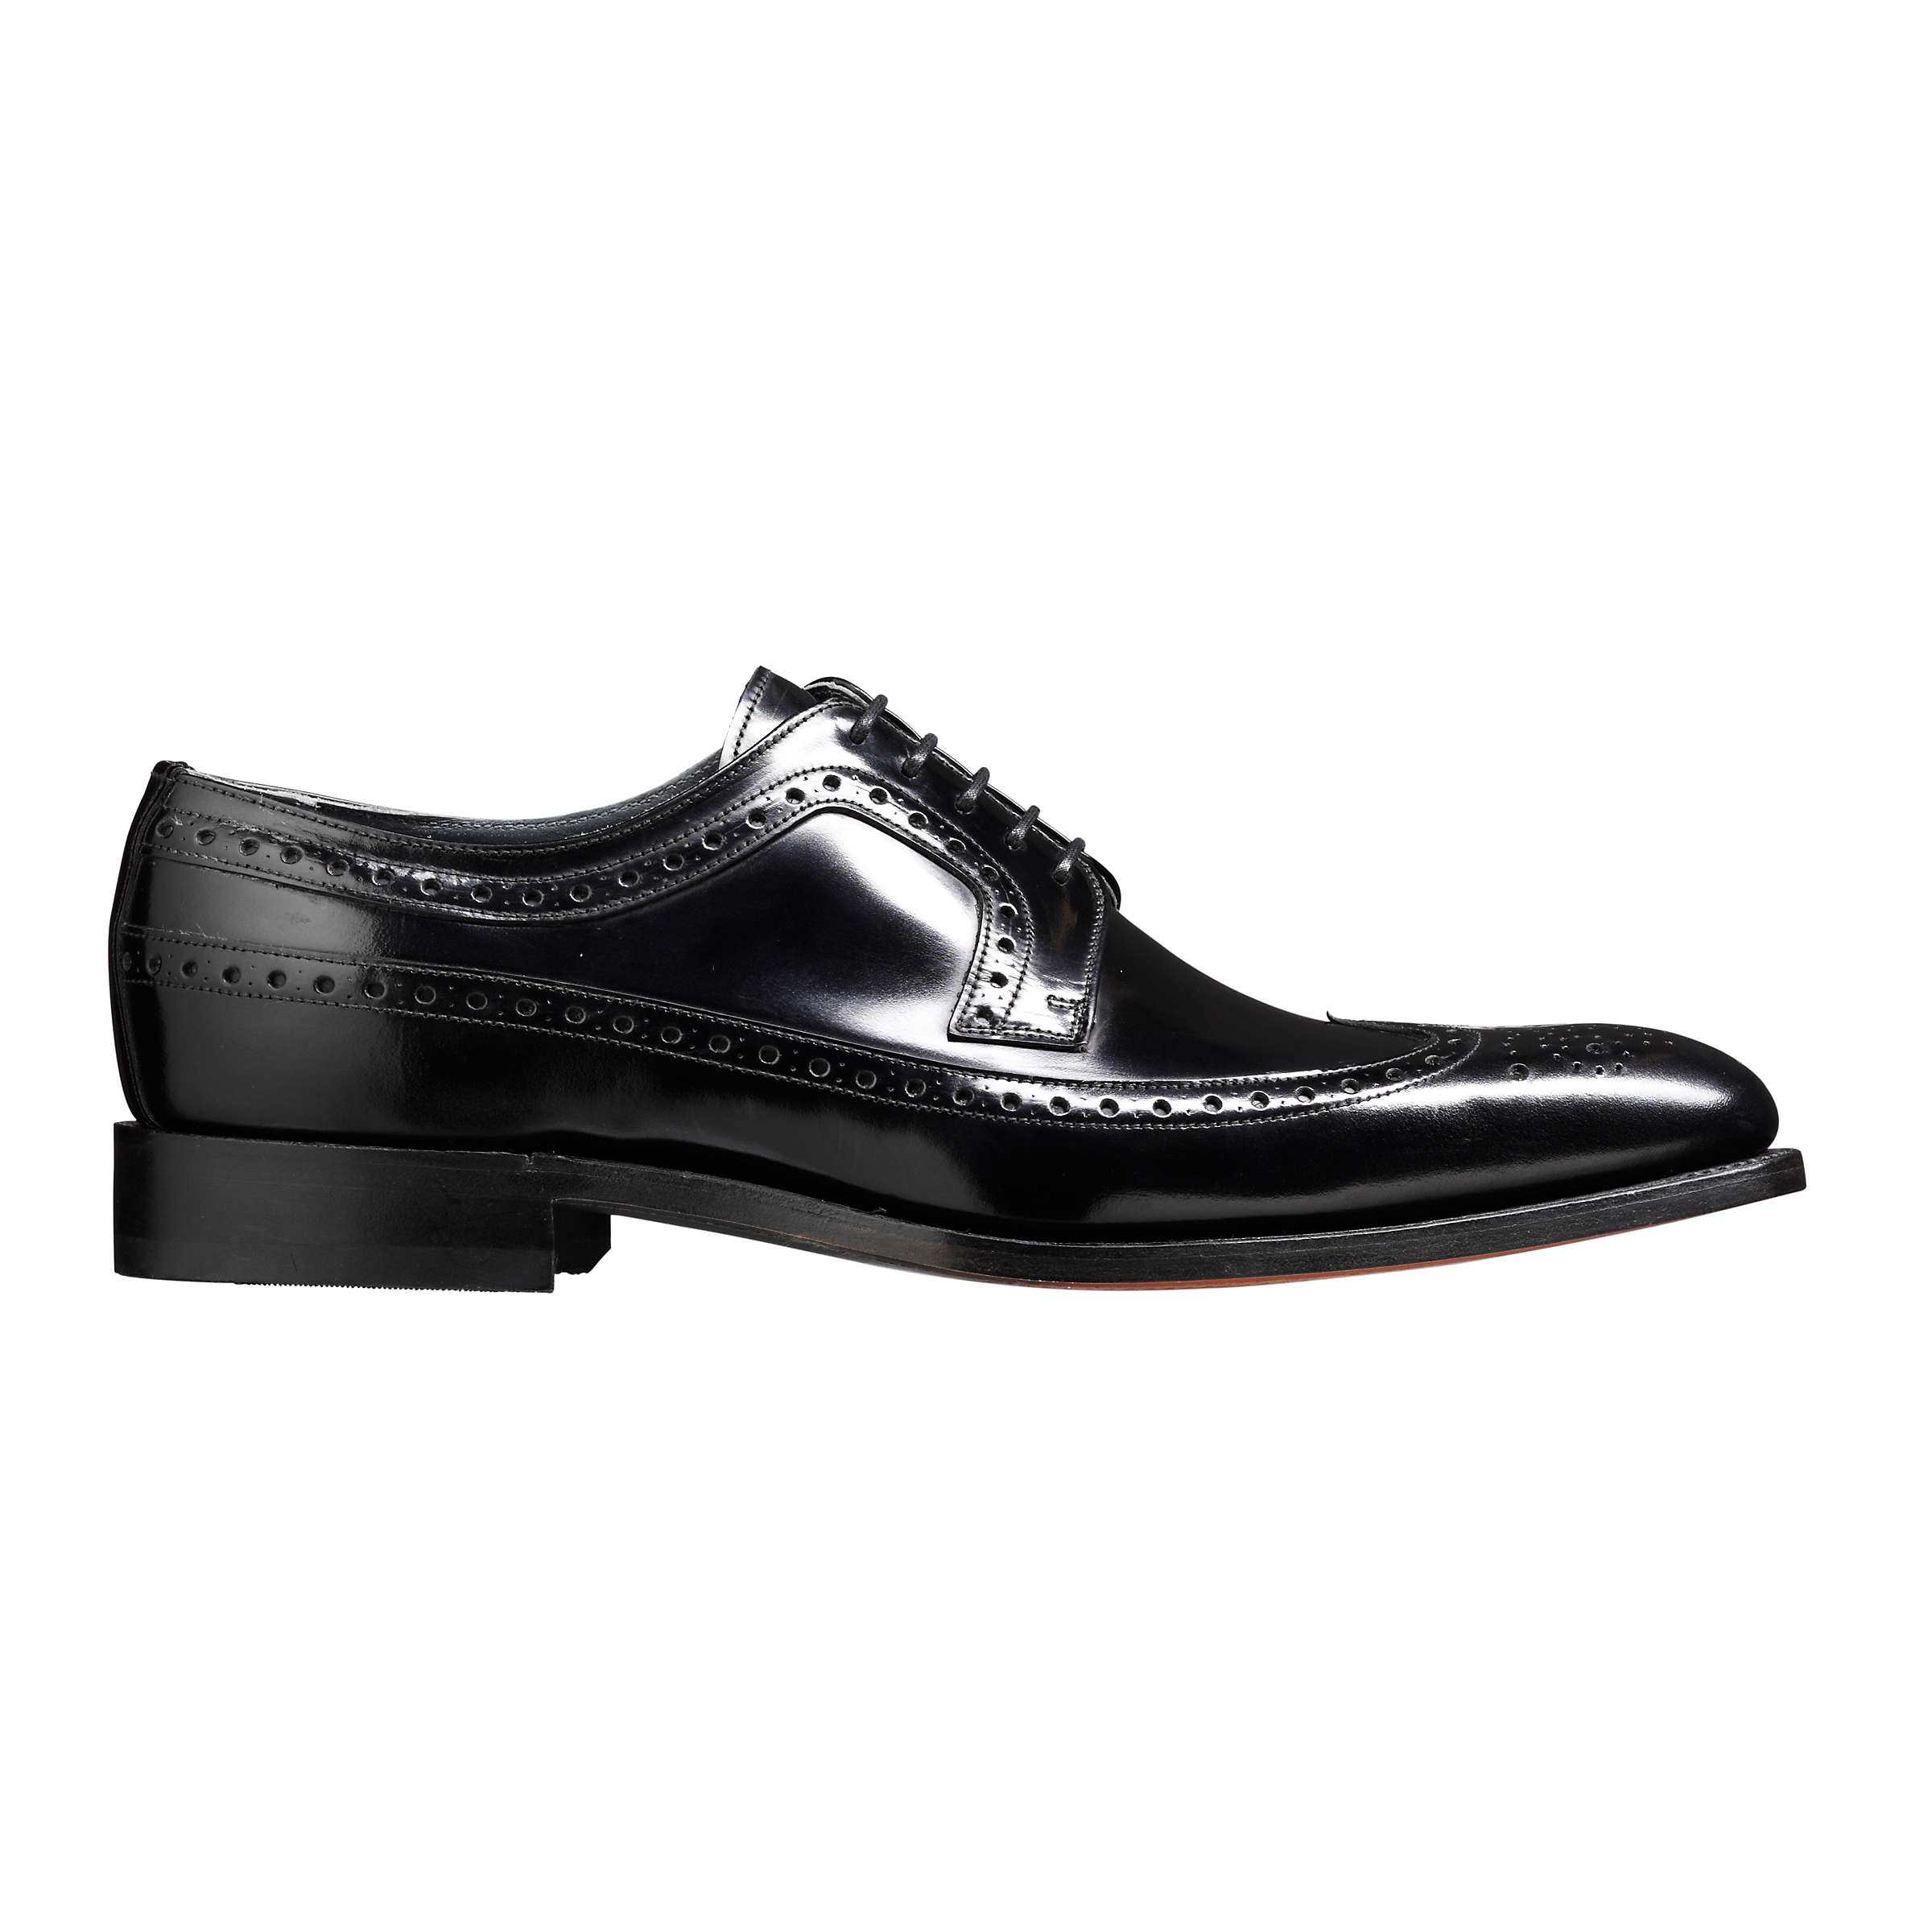 Buy Barker Woodbridge Leather Brogue Derby Shoes, Black Online at johnlewis.com